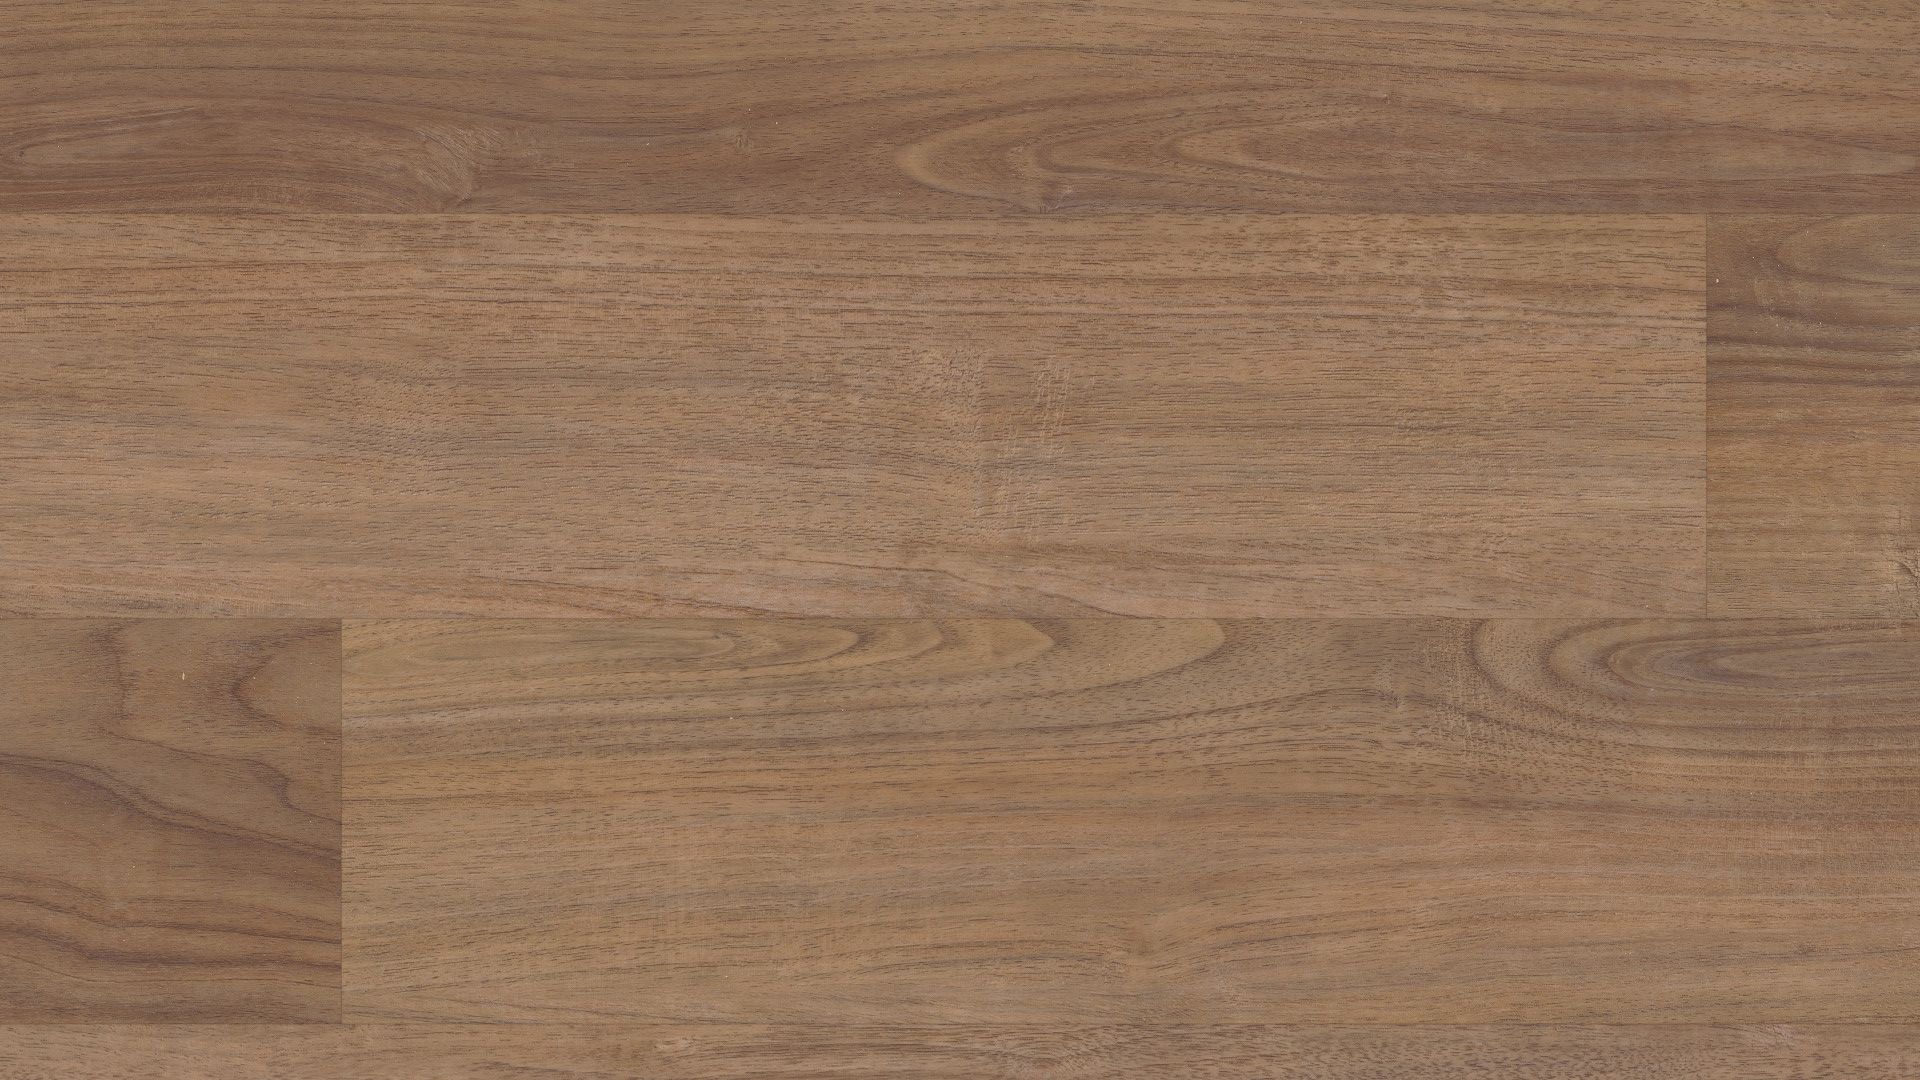 Plus 5 Plank Dakota Walnut, Is Coretec Floorscore Certified